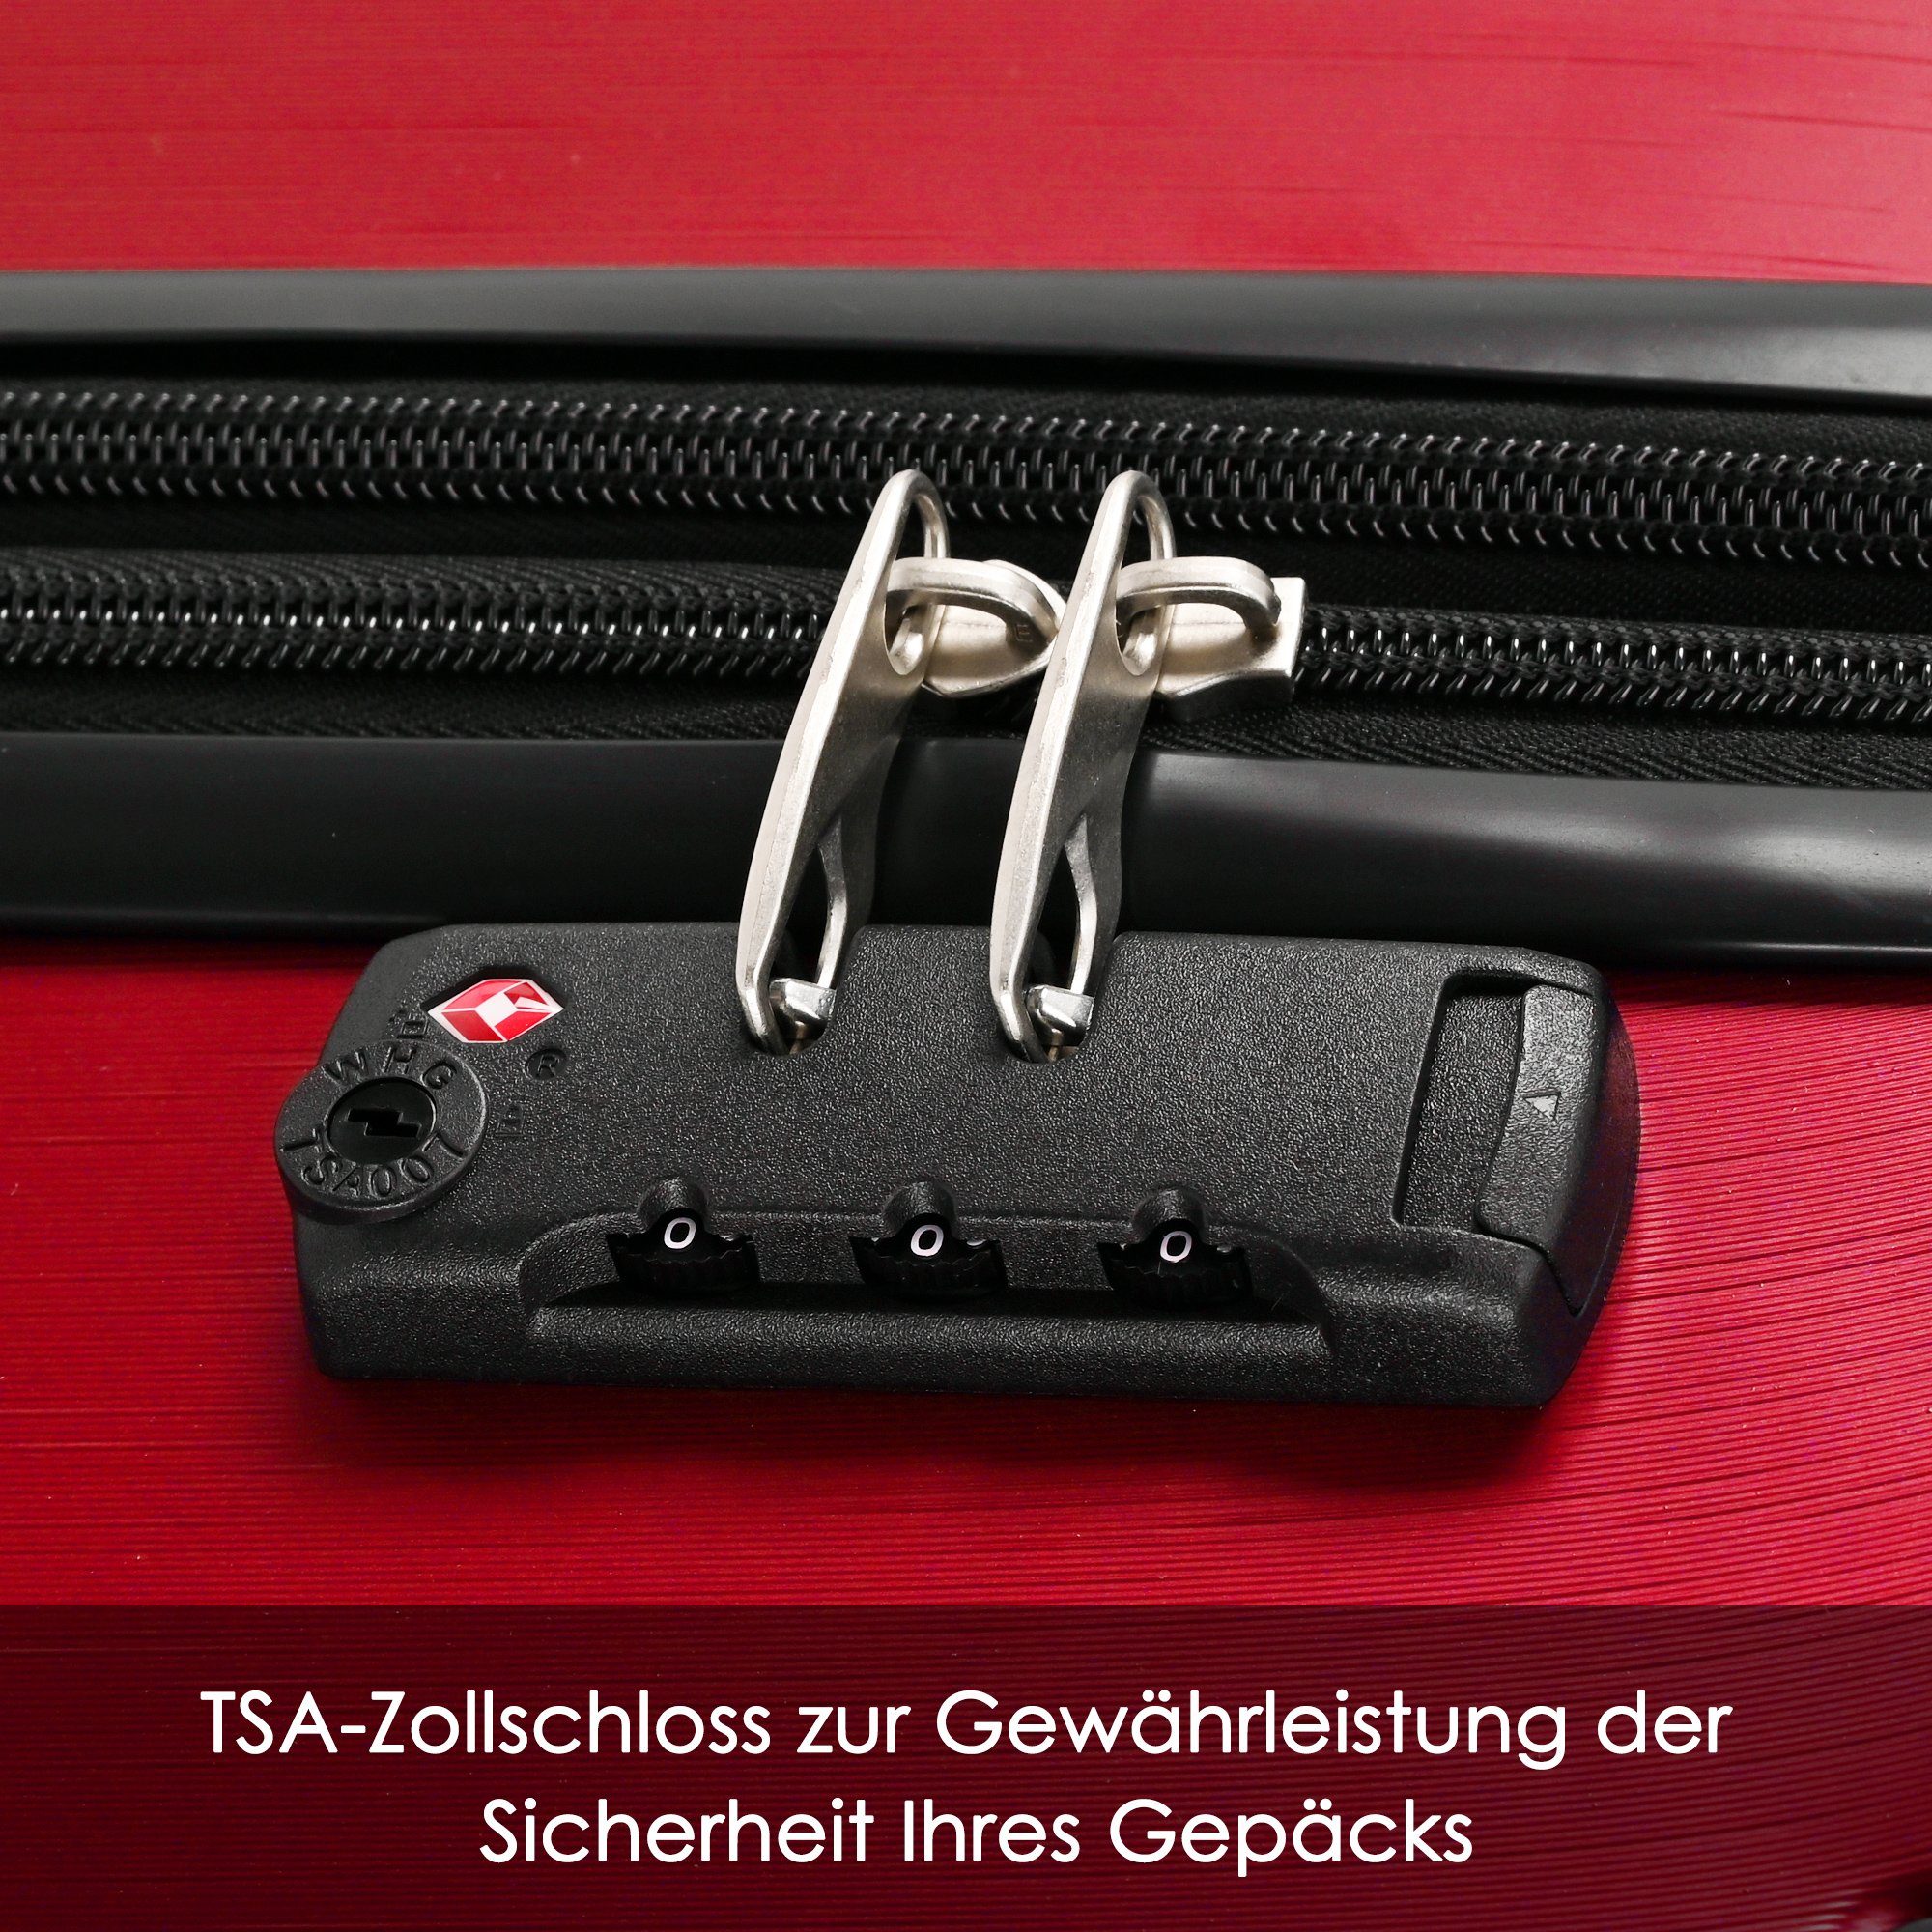 Ulife Trolleyset Hartschalen-Koffer Reisekoffer ABS (3 Rot Rollen, Zollschloss, tlg) TSA 4